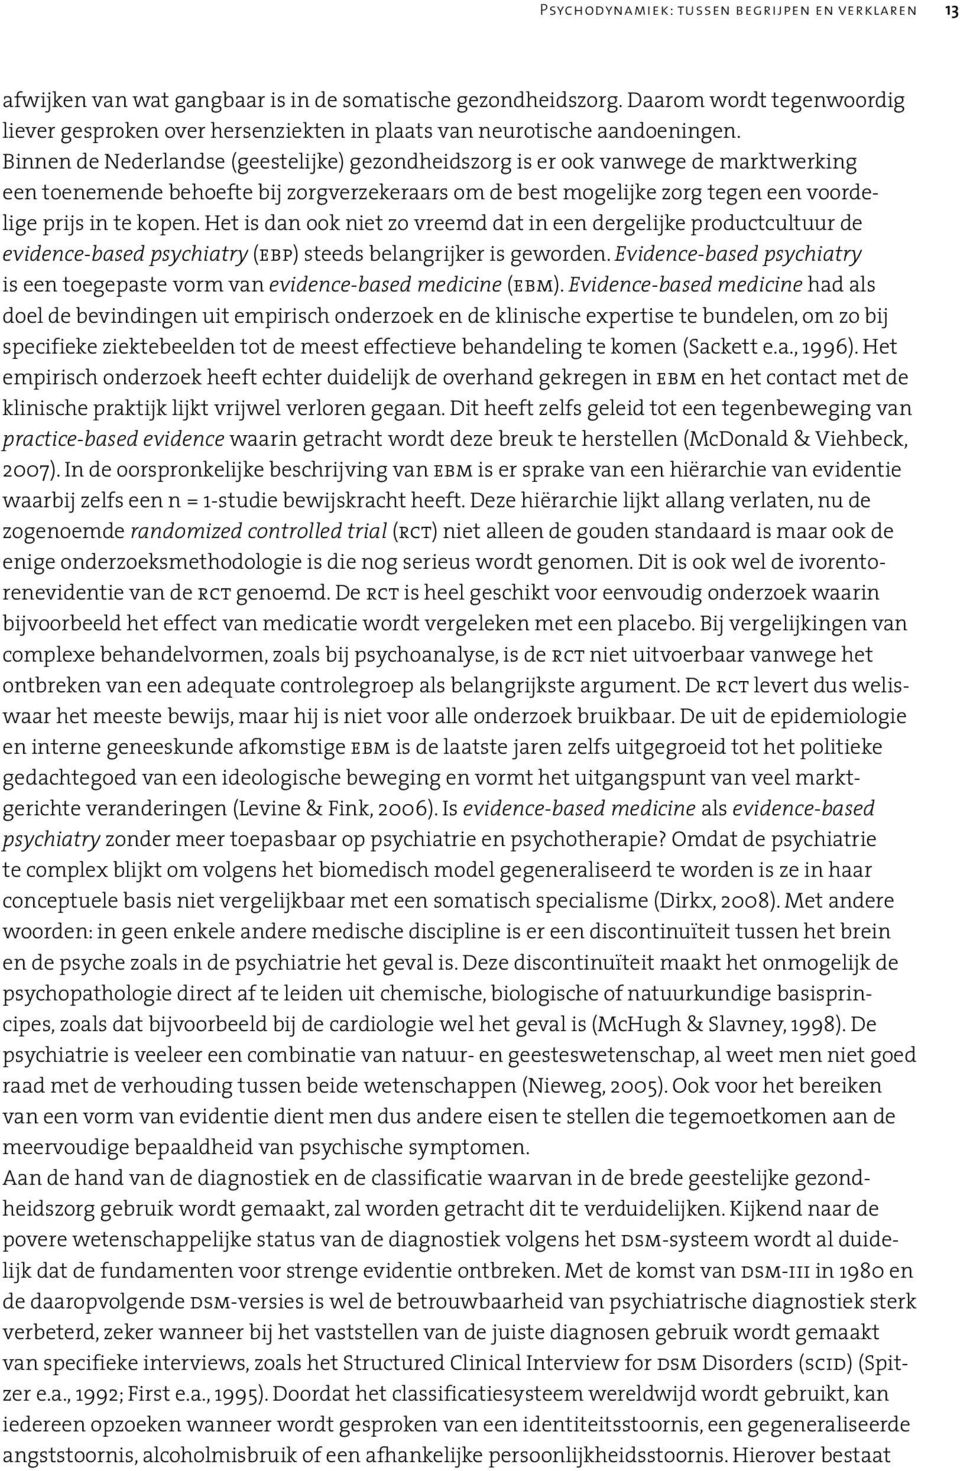 Binnen de Nederlandse (geestelijke) gezondheidszorg is er ook vanwege de marktwerking een toenemende behoefte bij zorgverzekeraars om de best mogelijke zorg tegen een voordelige prijs in te kopen.